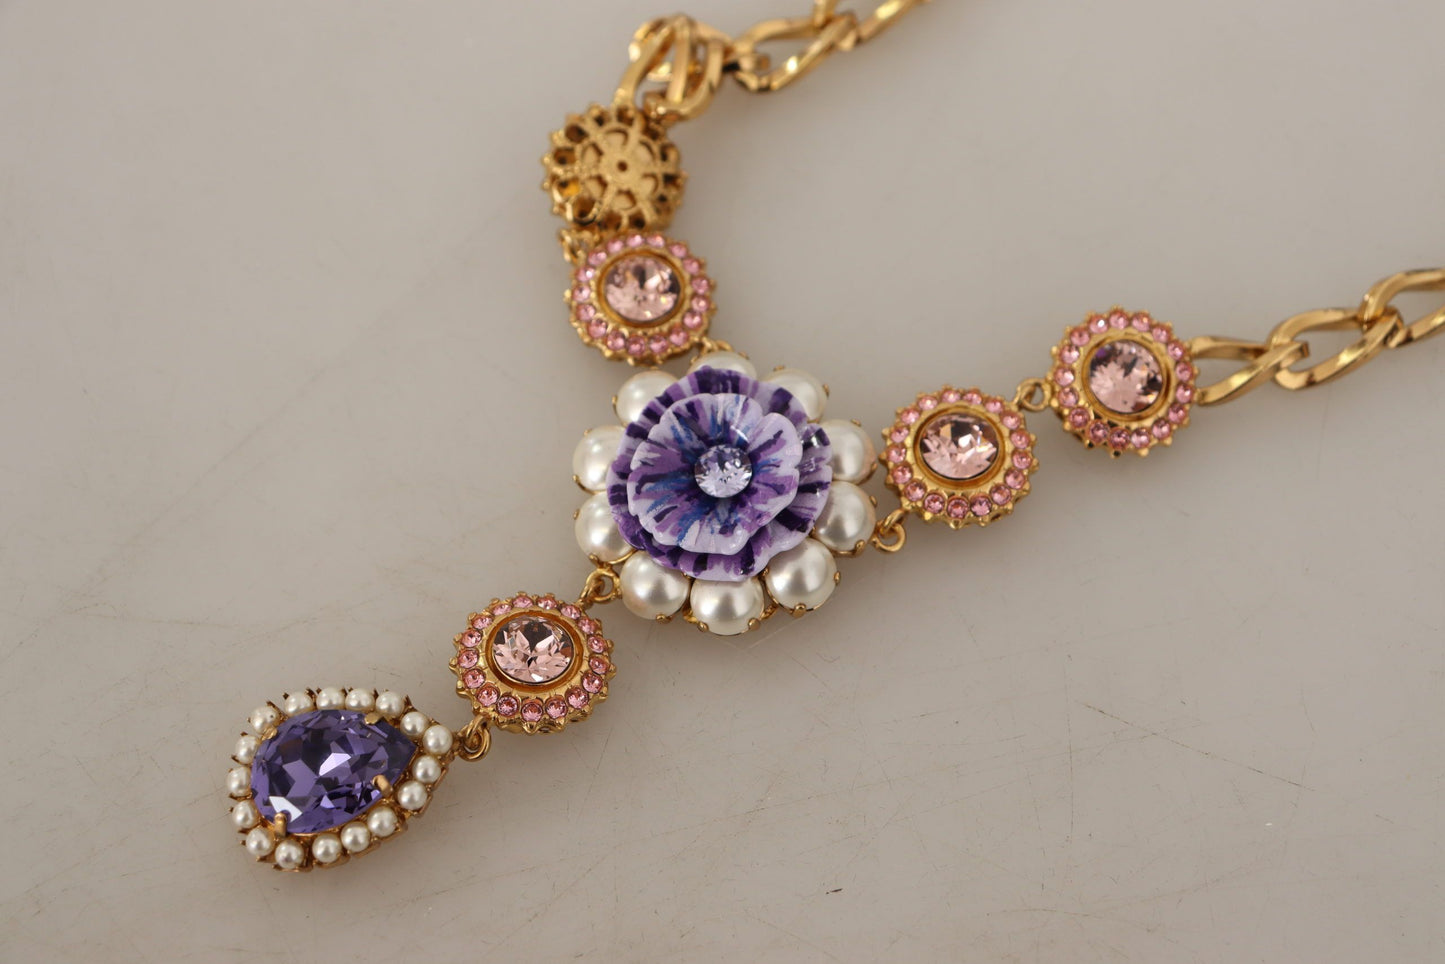 Elegant Floral Crystal Statement Necklace